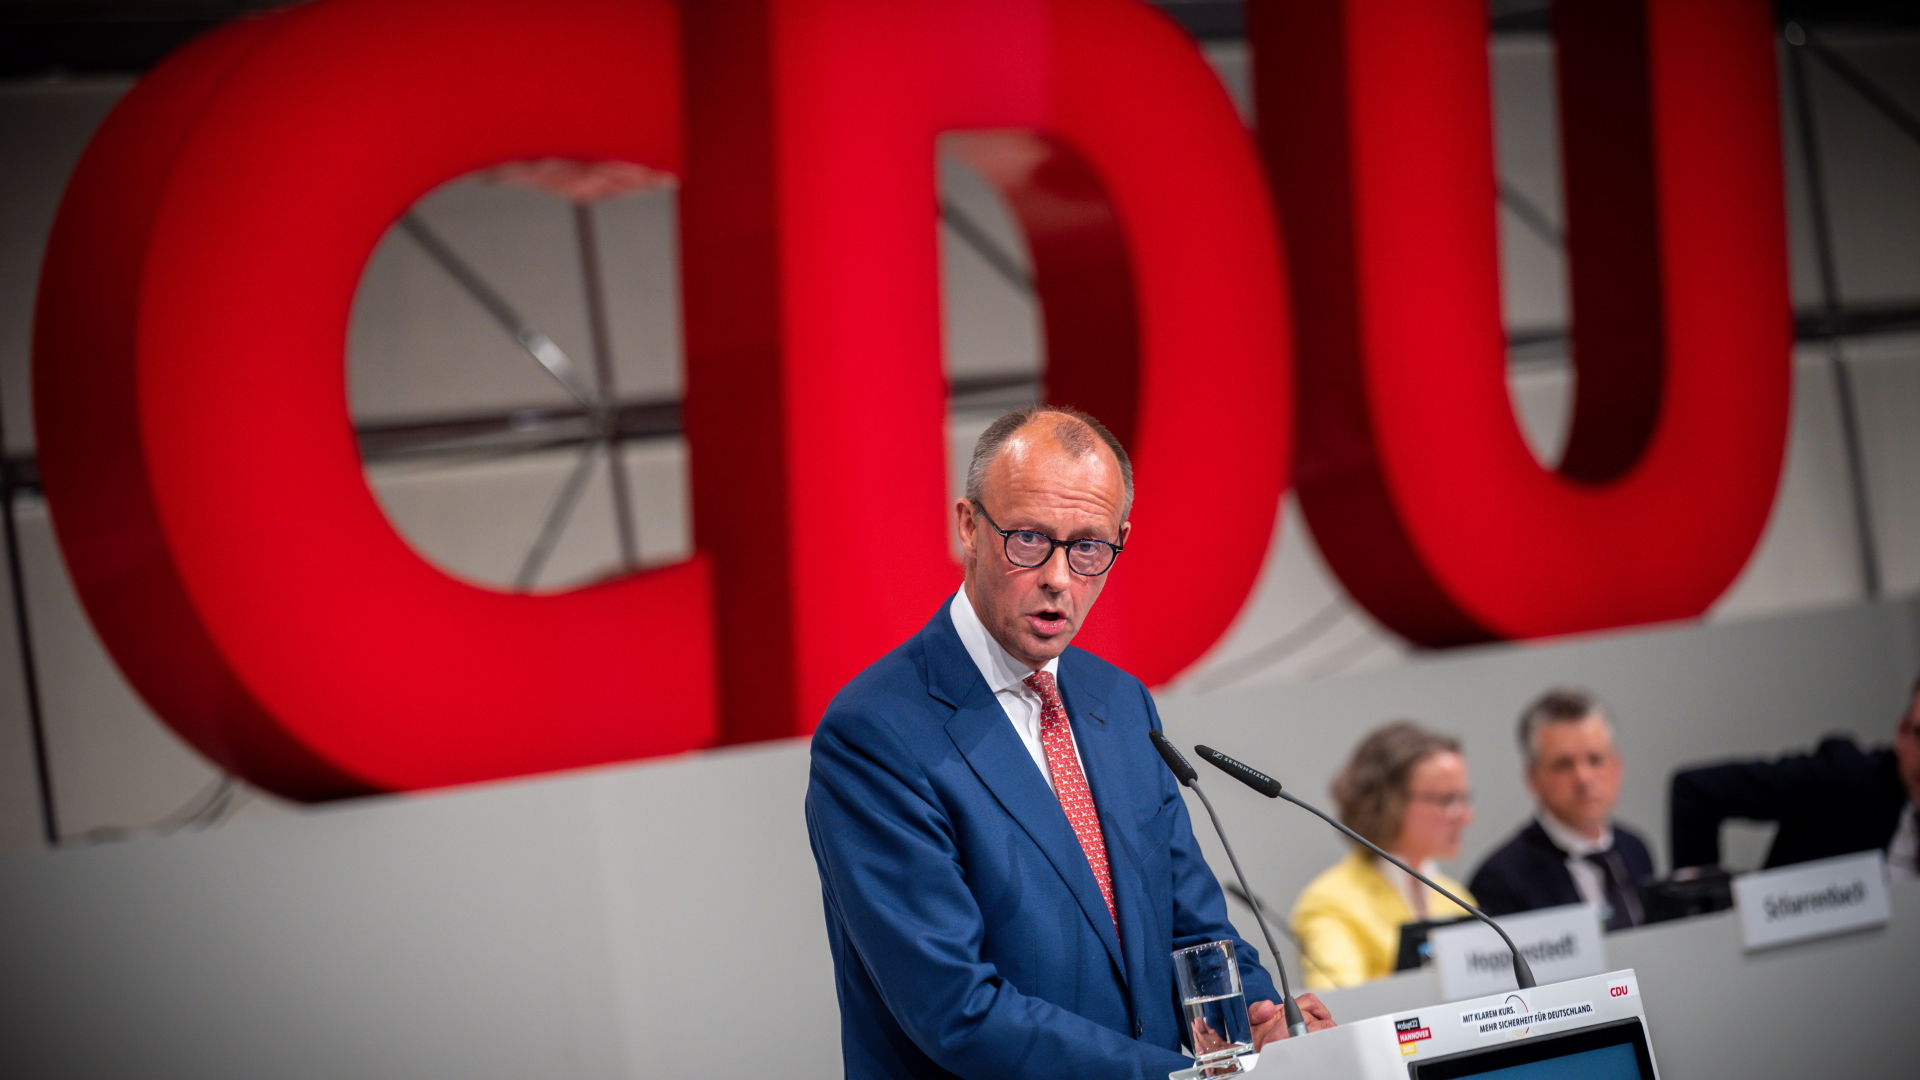 Friedrich Merz, CDU Bundesvorsitzender, spricht beim CDU Bundesparteitag.